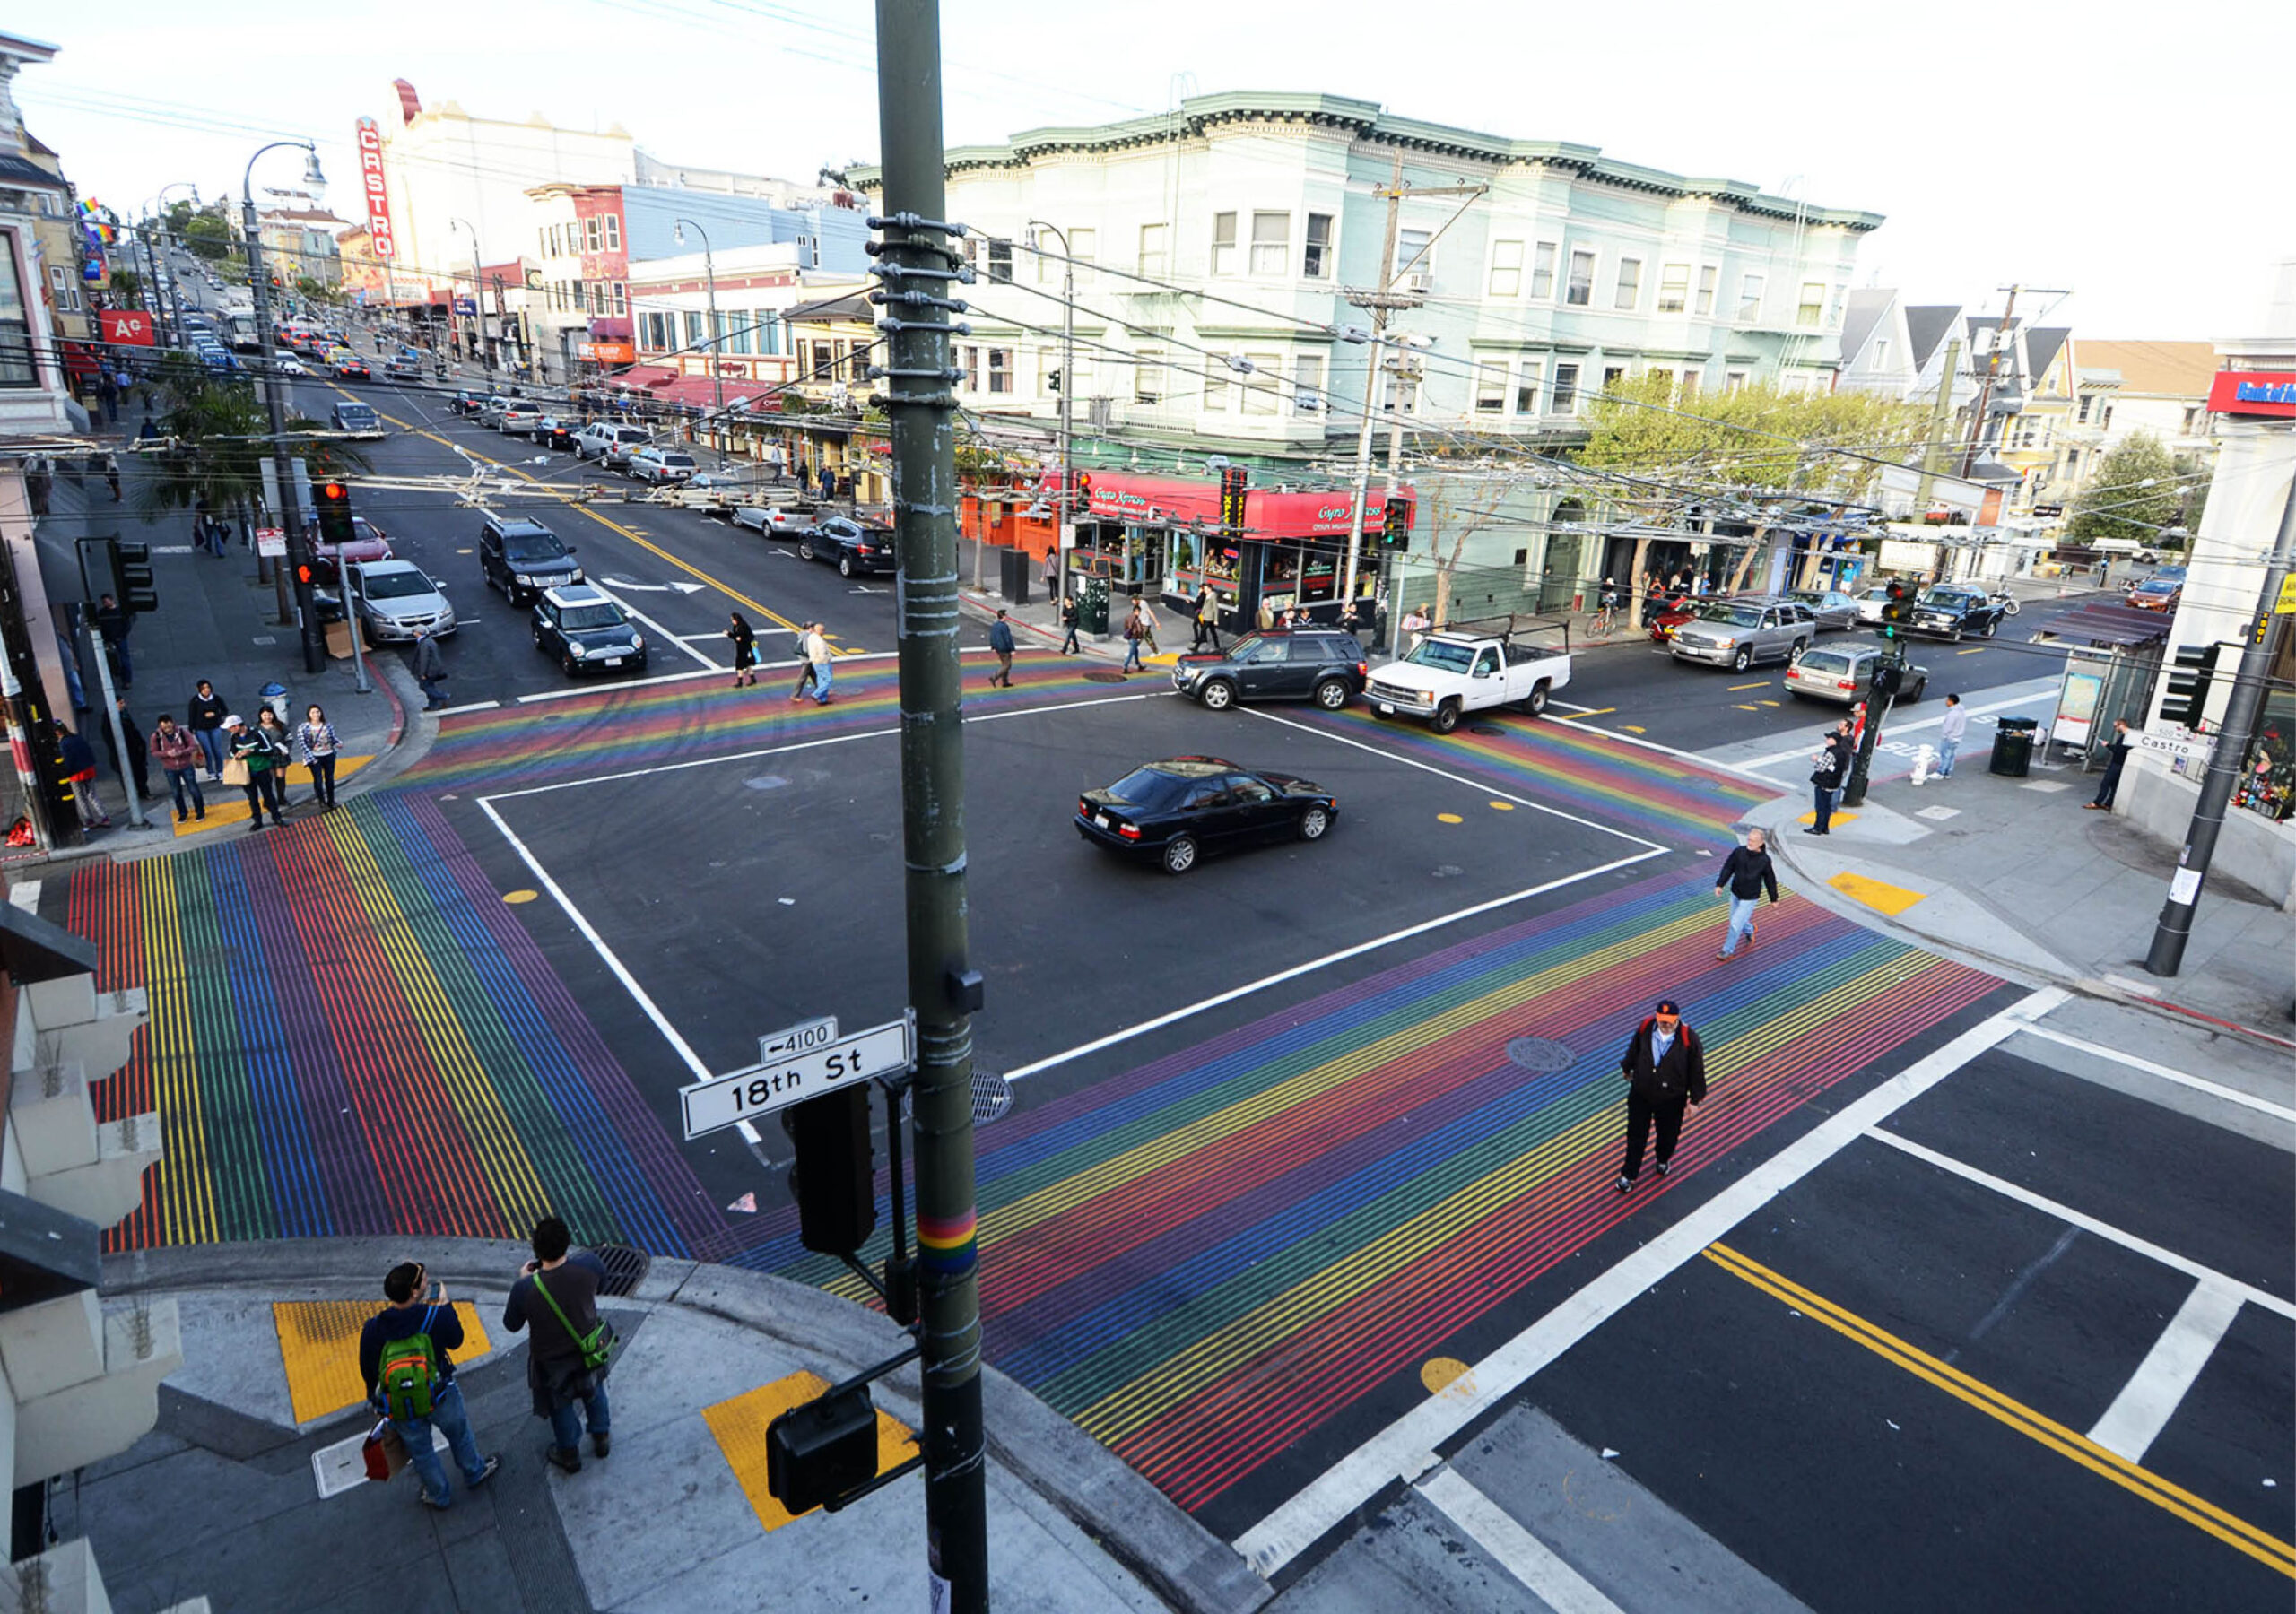 Castro rainbow crosswalk